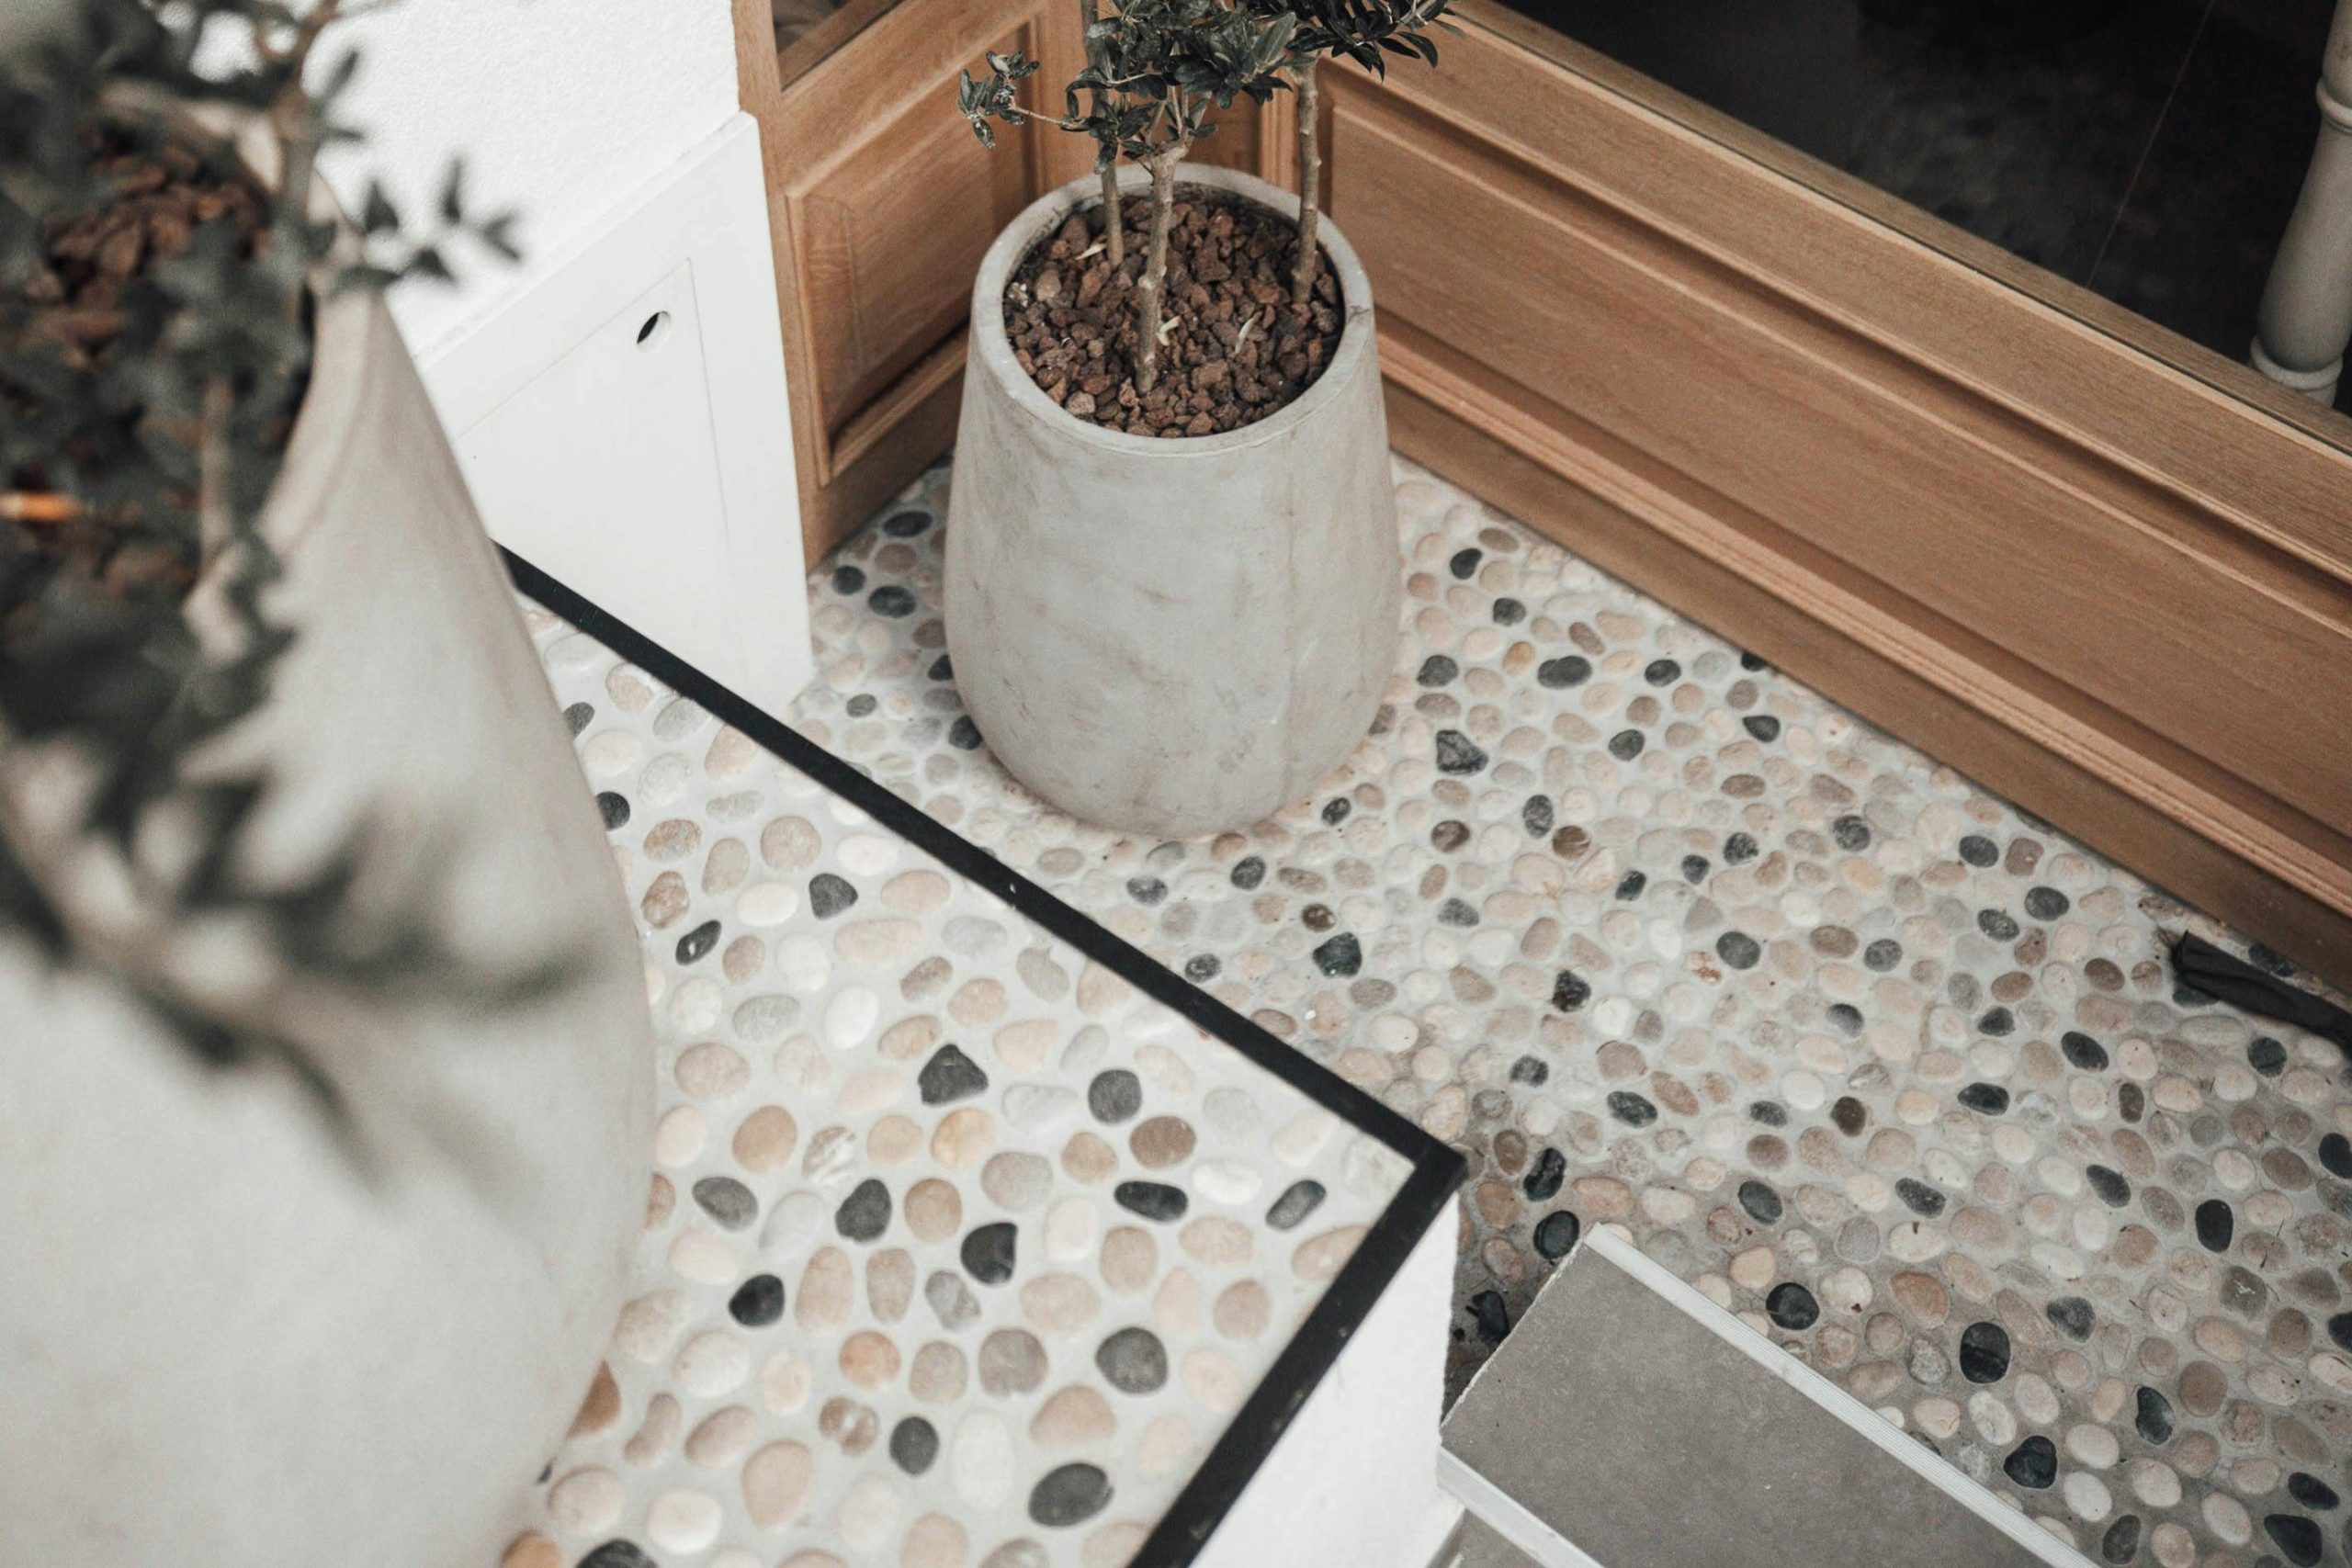 Lantai dapur batu alam. Sumber: pexels